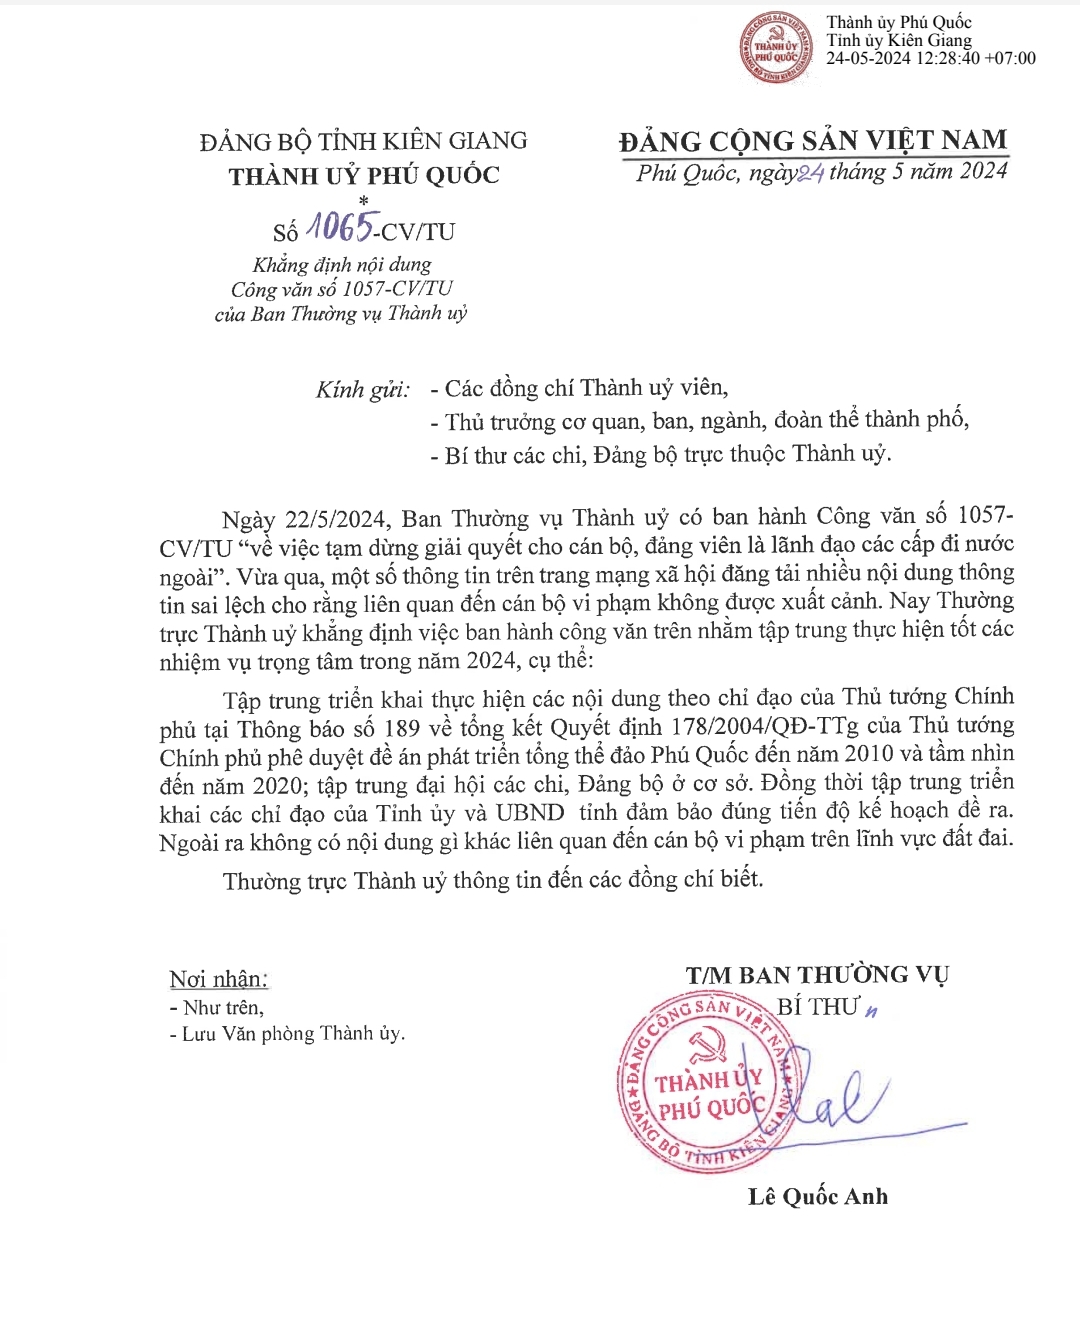 Thành ủy Phú Quốc (Kiên Giang) cho biết, vừa có công văn khẳng định về việc tạm dừng giải quyết cho cán bộ, đảng viên là lãnh đạo đi nước ngoài không liên quan đến việc xử lý đất đai,